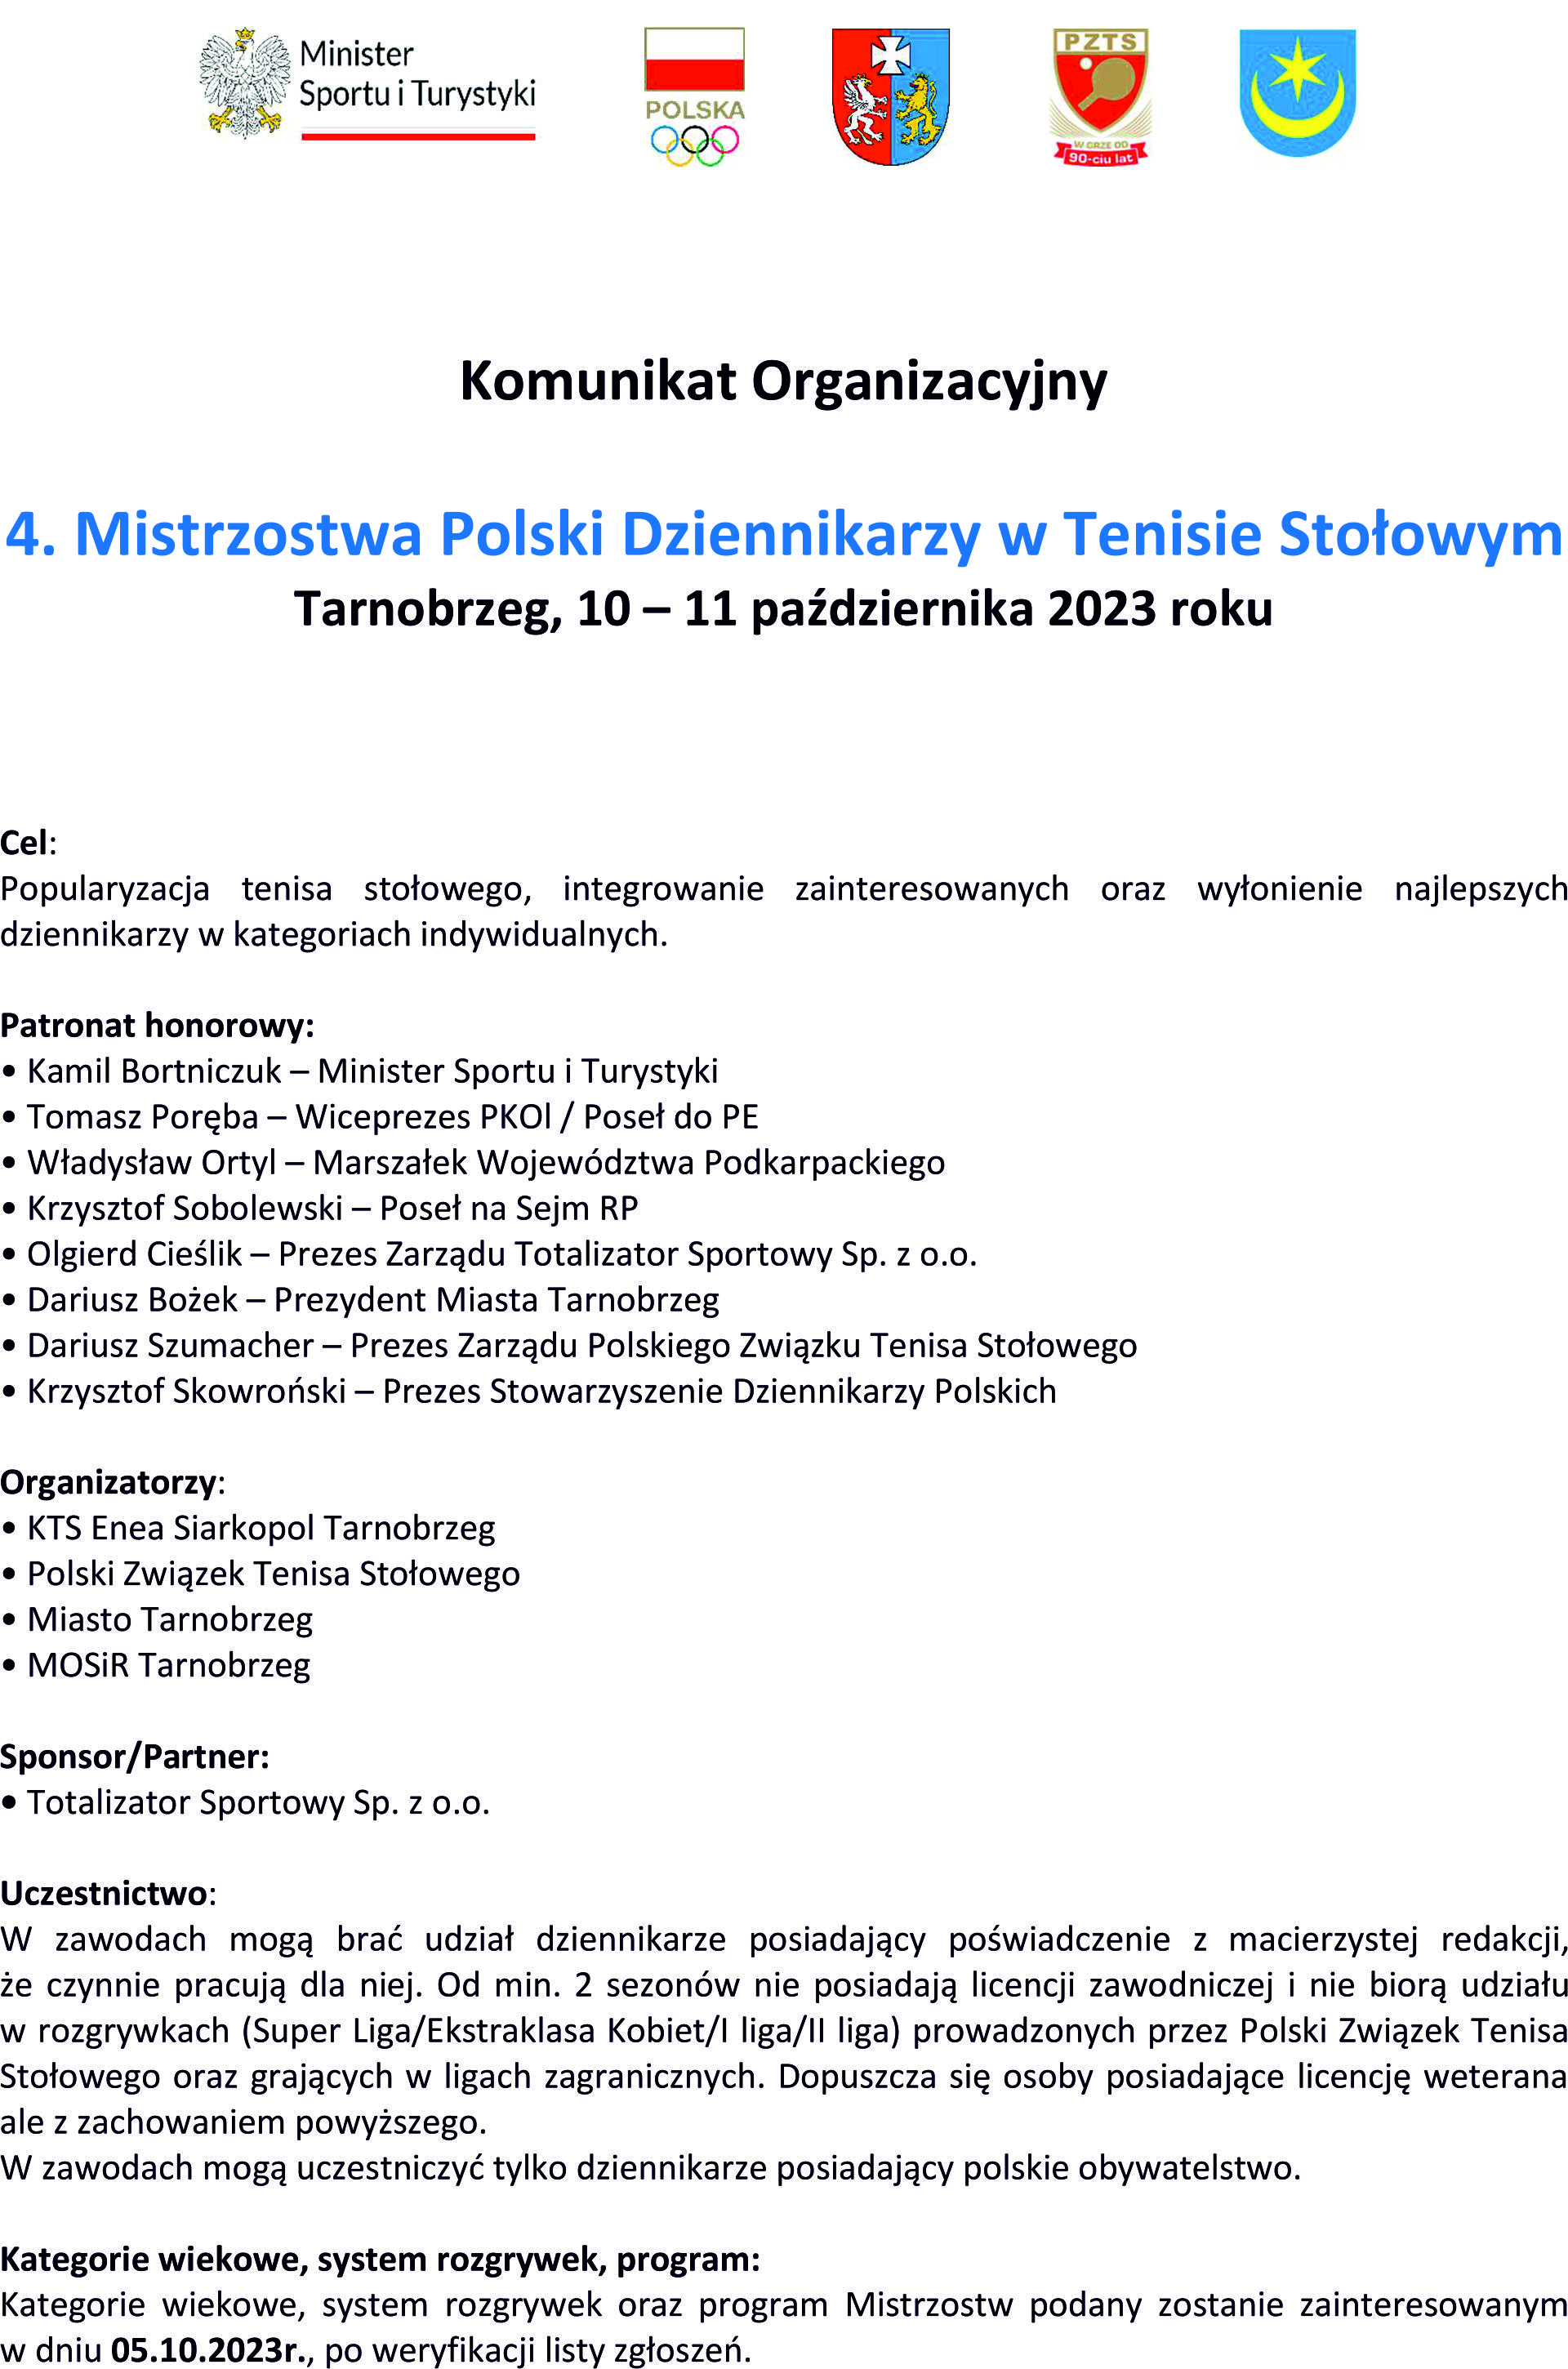 4. Mistrzostwa Polski Dziennikarzy w Tenisie Stołowym